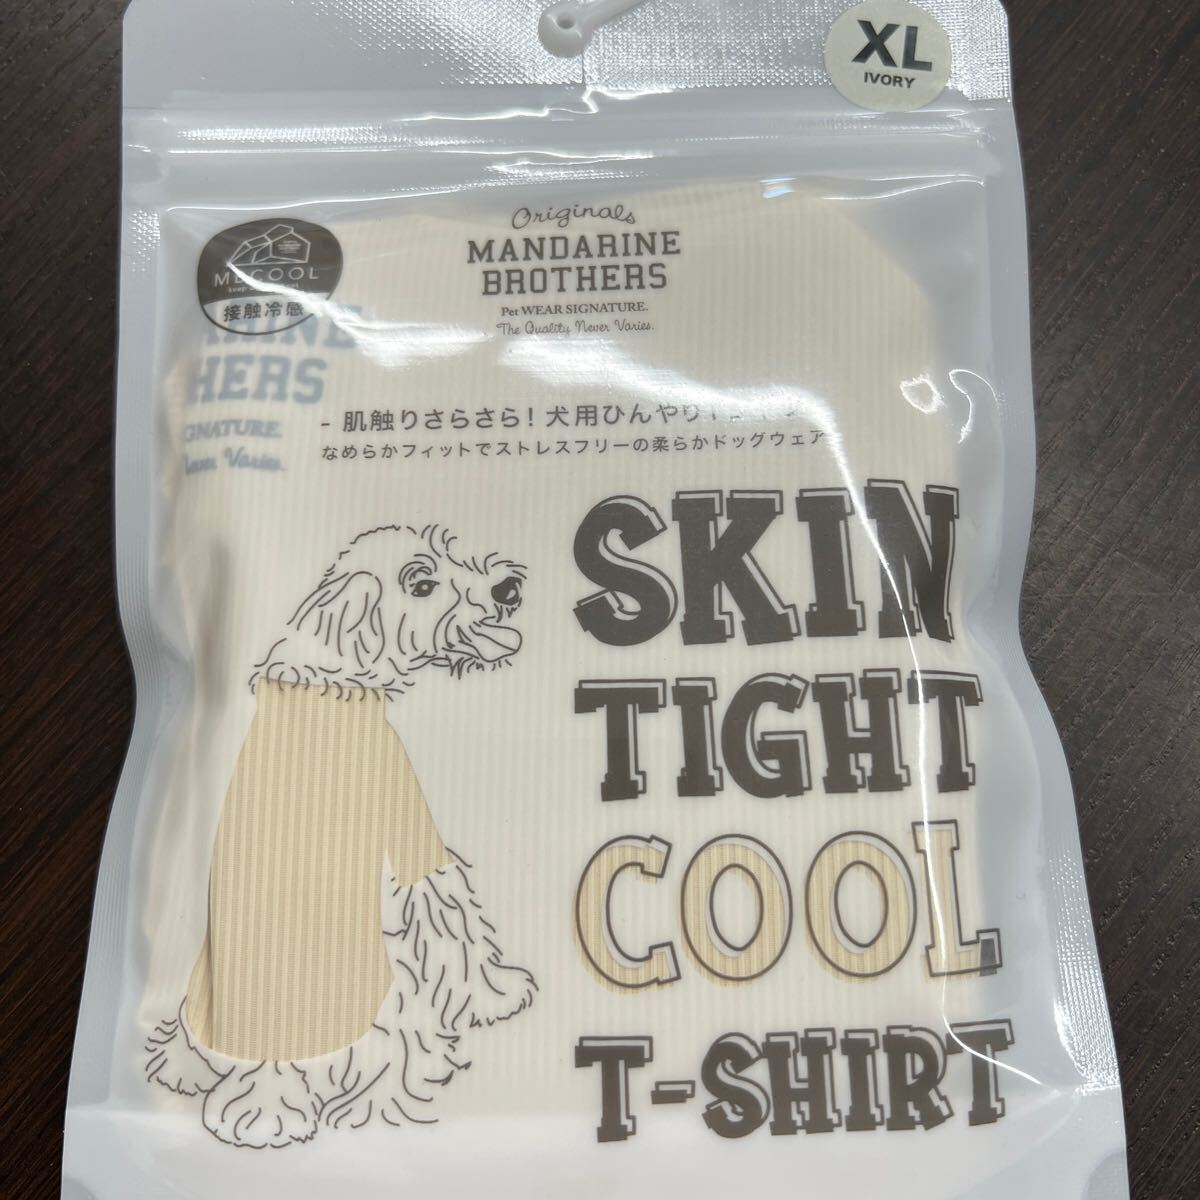 【XL IVORY】MANDARINE BROTHERS マンダリンブラザーズ SKIN TIGHT COOL T-SHIRT スキンタイトクールＴシャツ 犬用インナーウェアの画像4